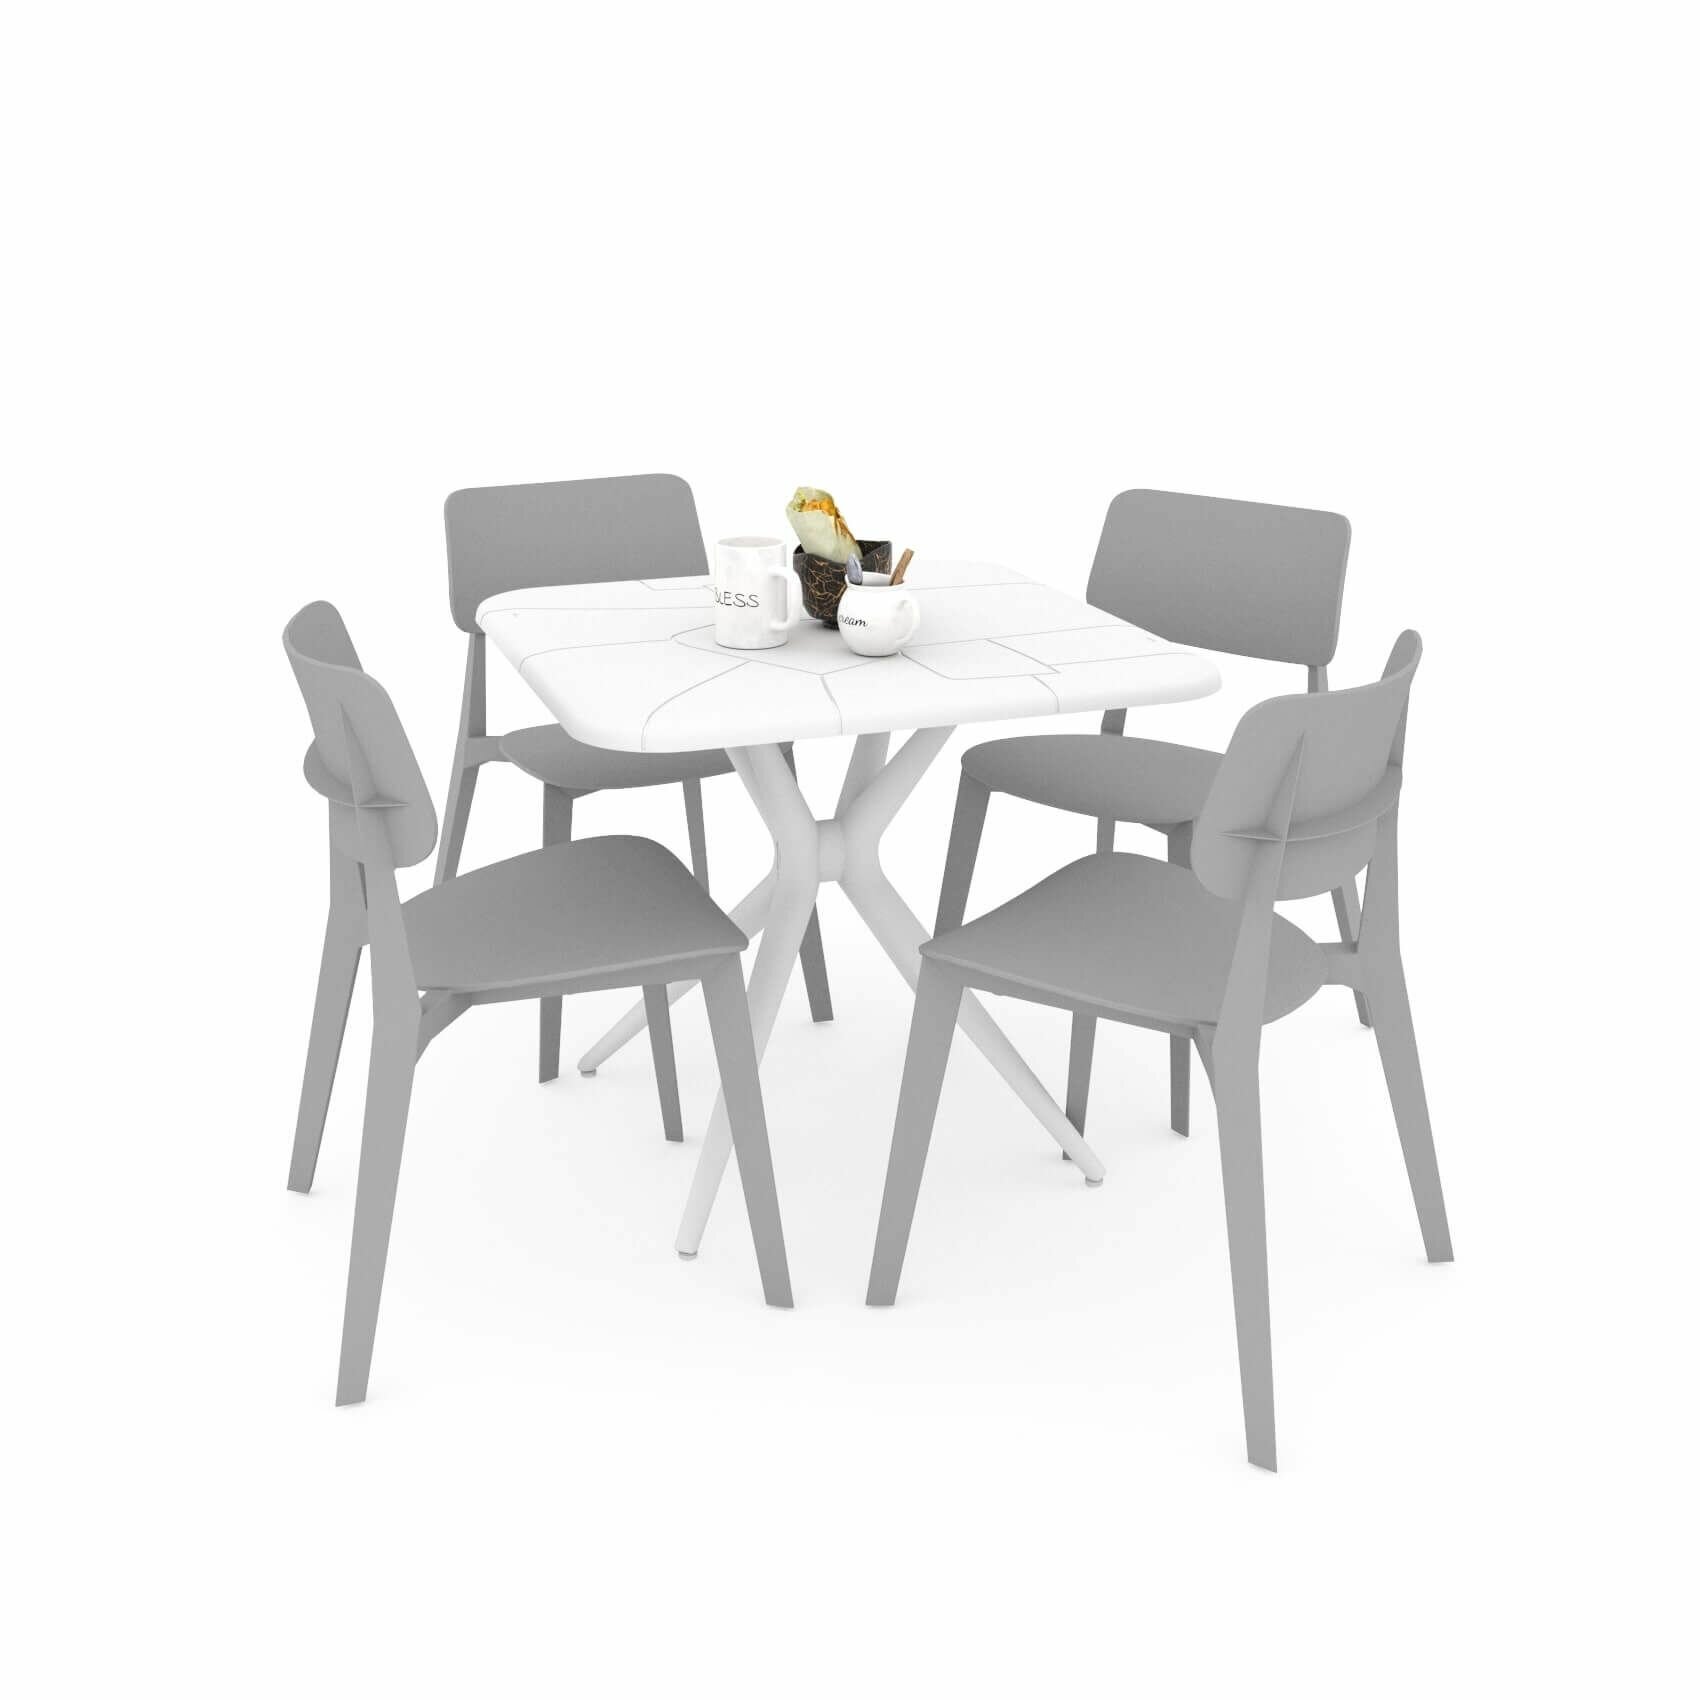 Стол и стулья для кухни, стол квадратный и 4 кресла, Обеденная группа для кухни стол и стулья, садовый комплект обеденный, белый/серый